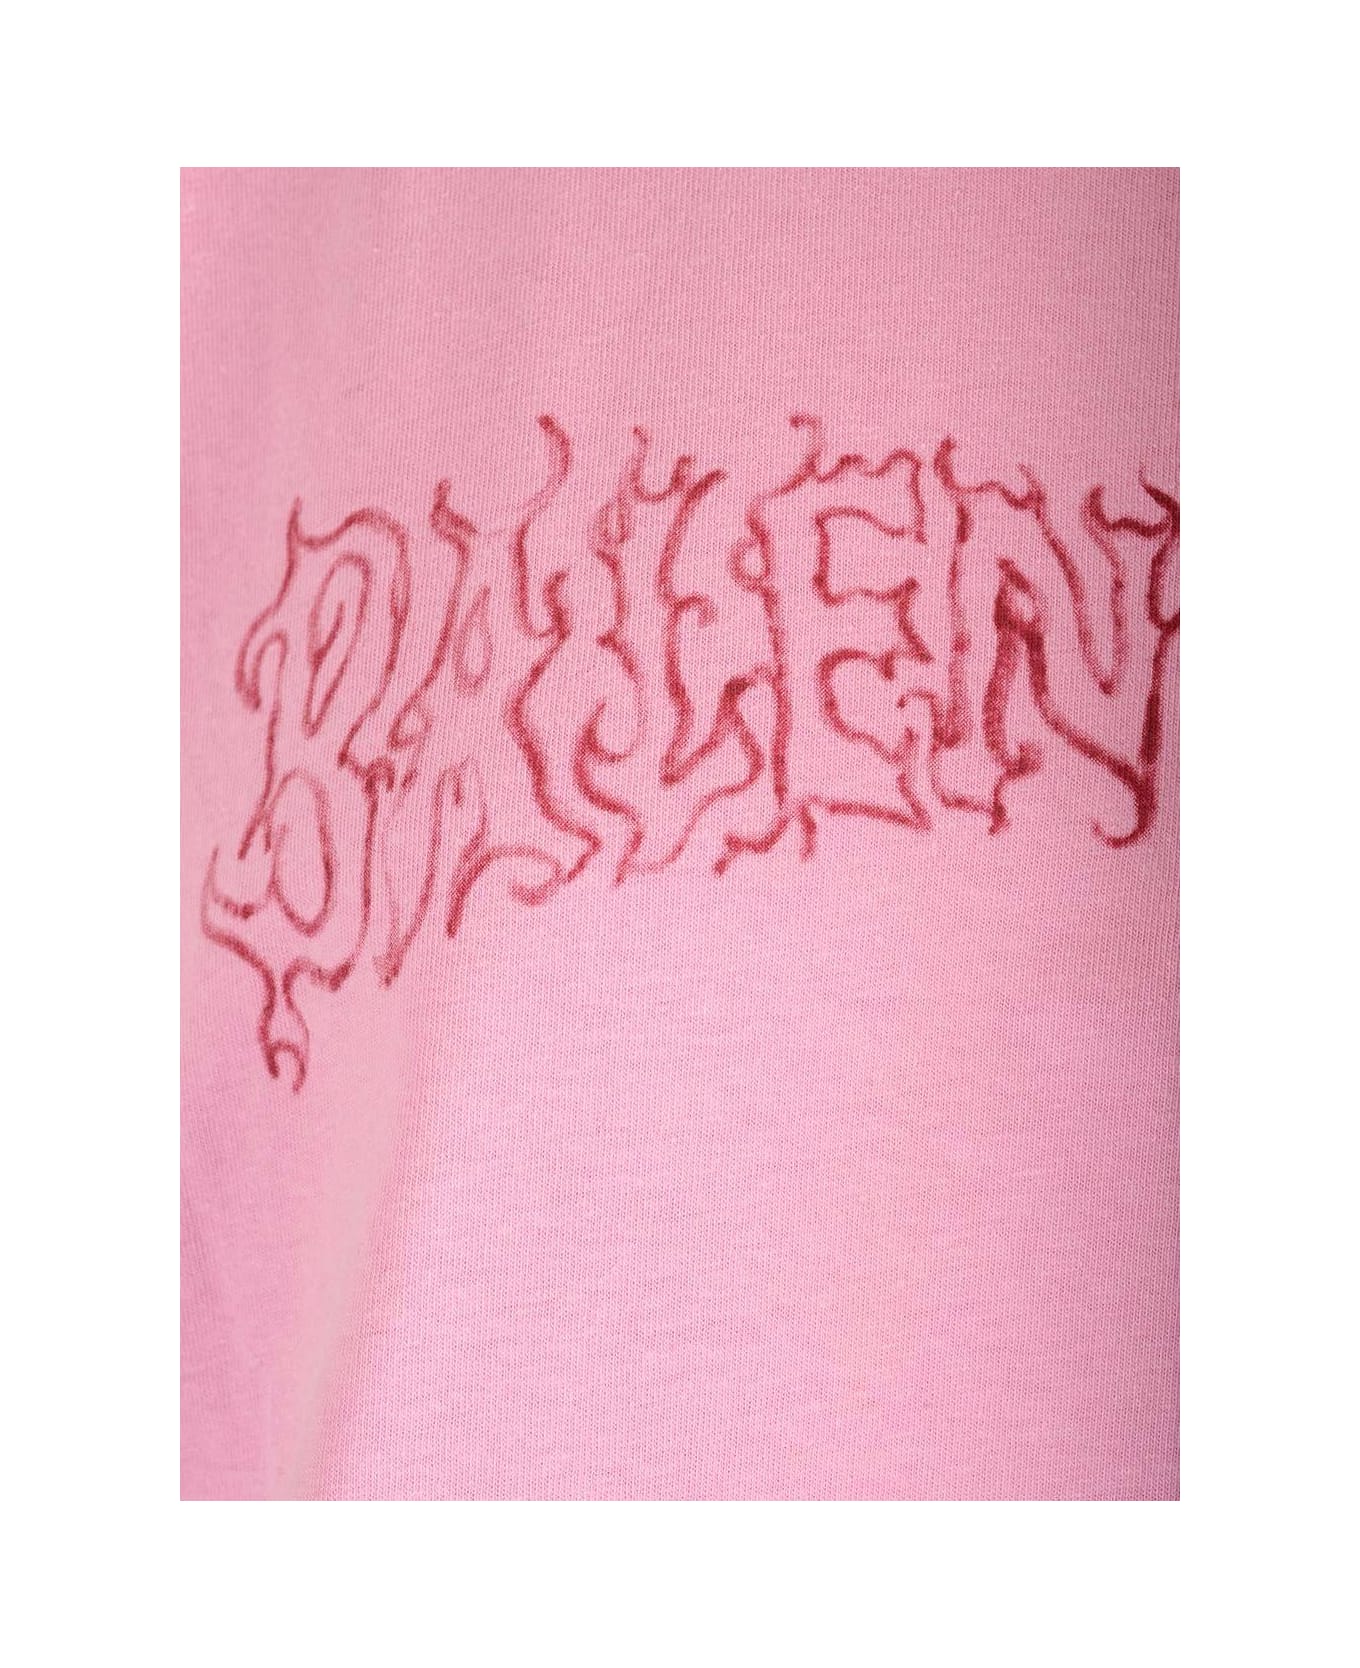 Balenciaga Logo Printed Crewneck T-shirt - Pink/red